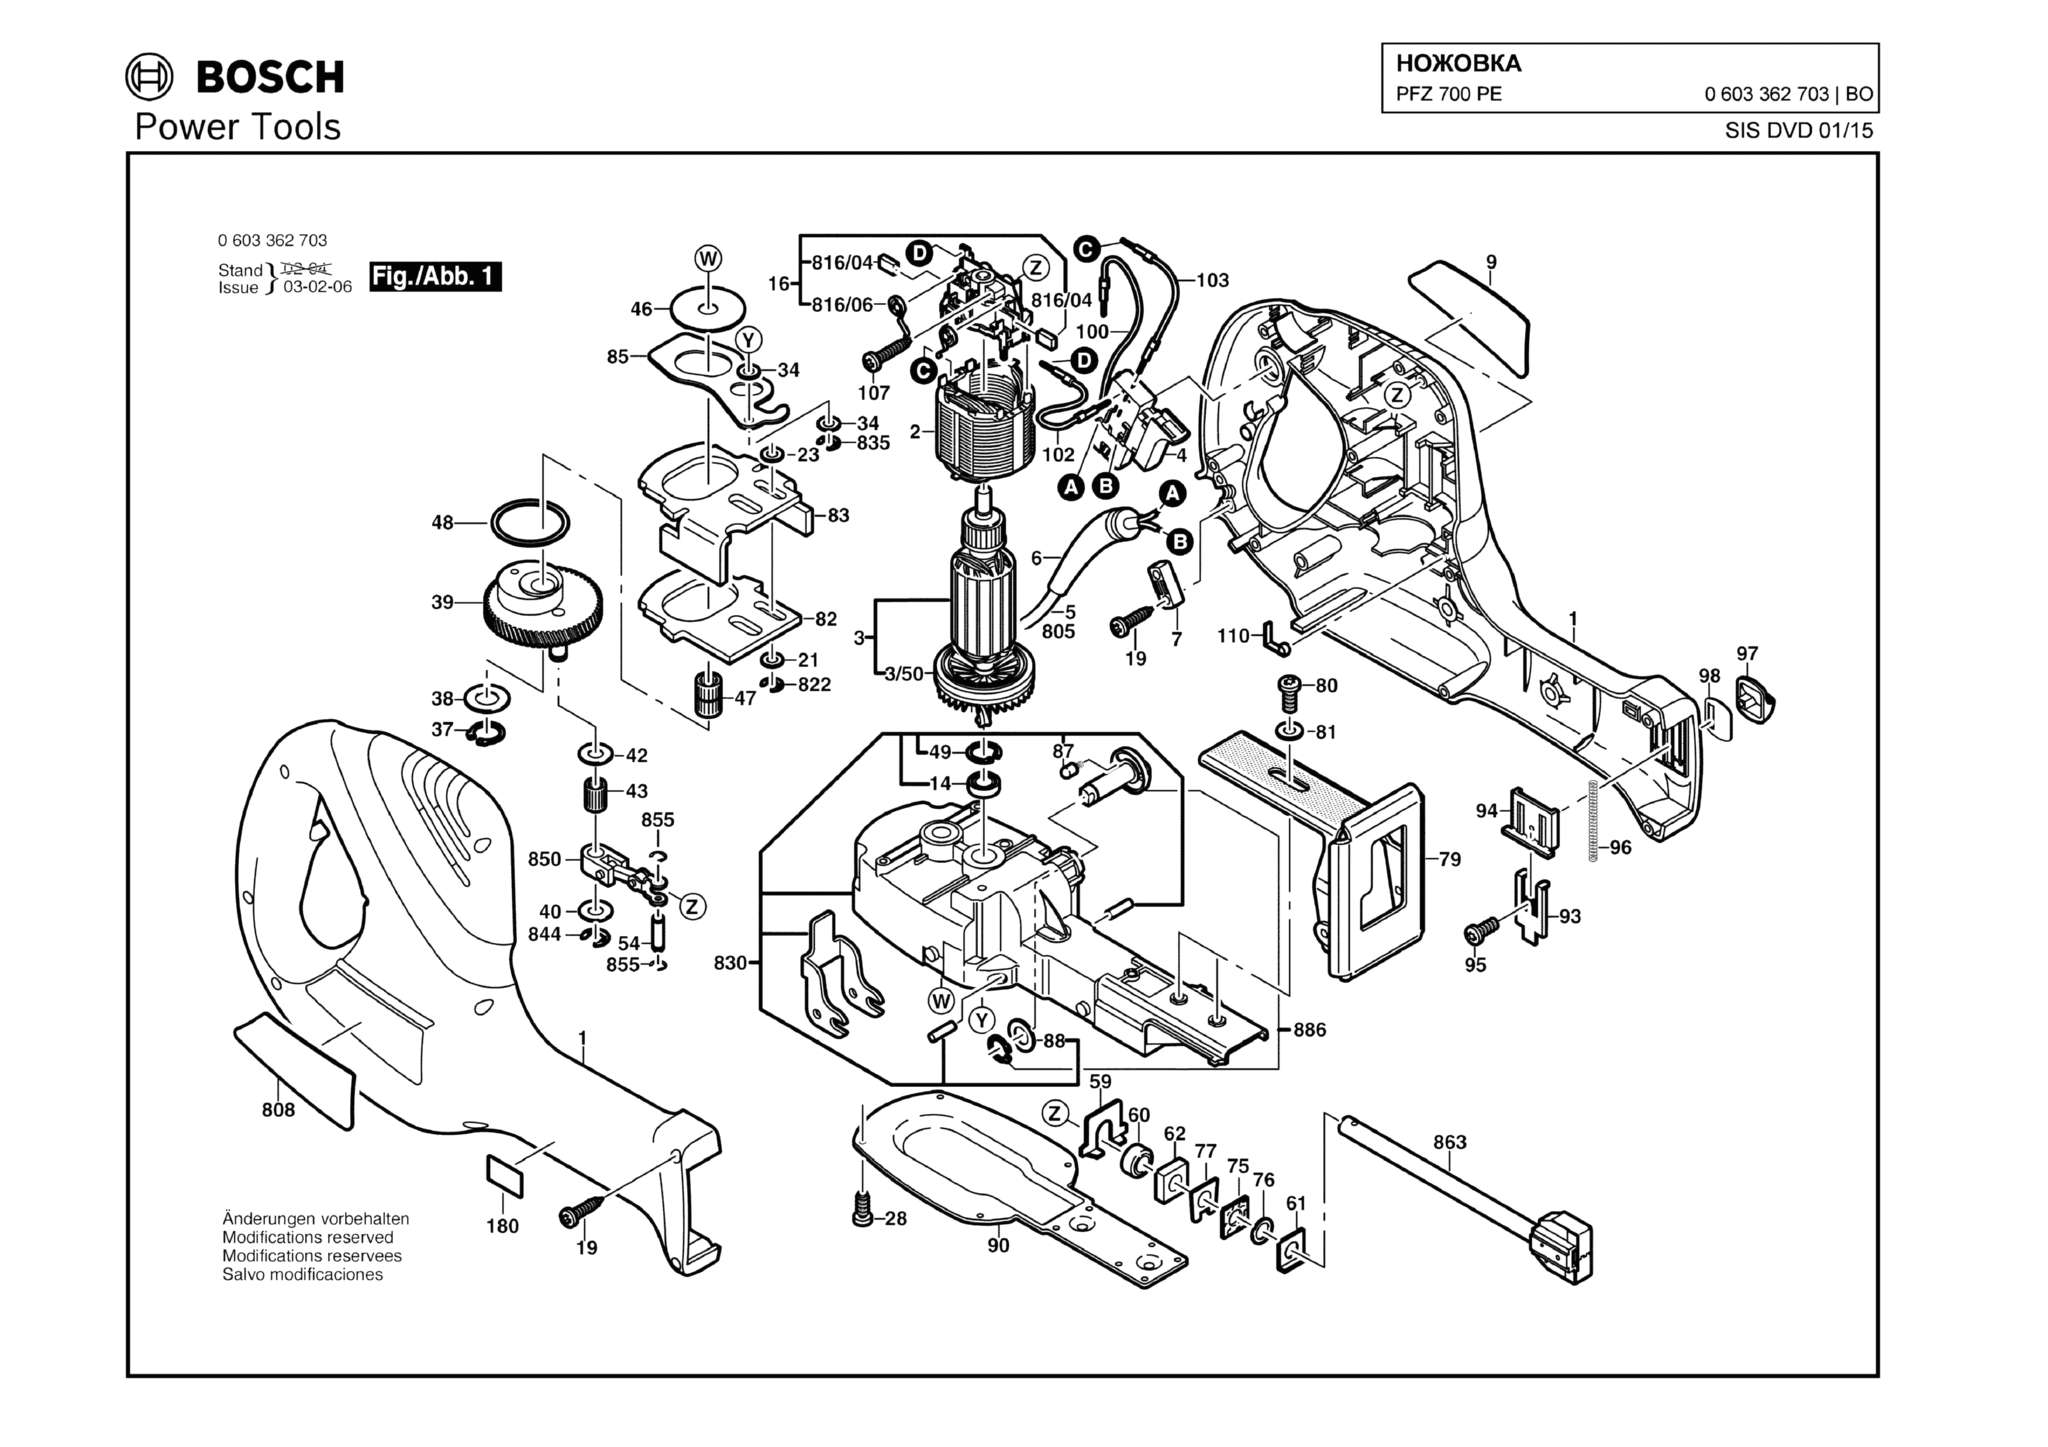 Запчасти, схема и деталировка Bosch PFZ 700 PE (ТИП 0603362703)